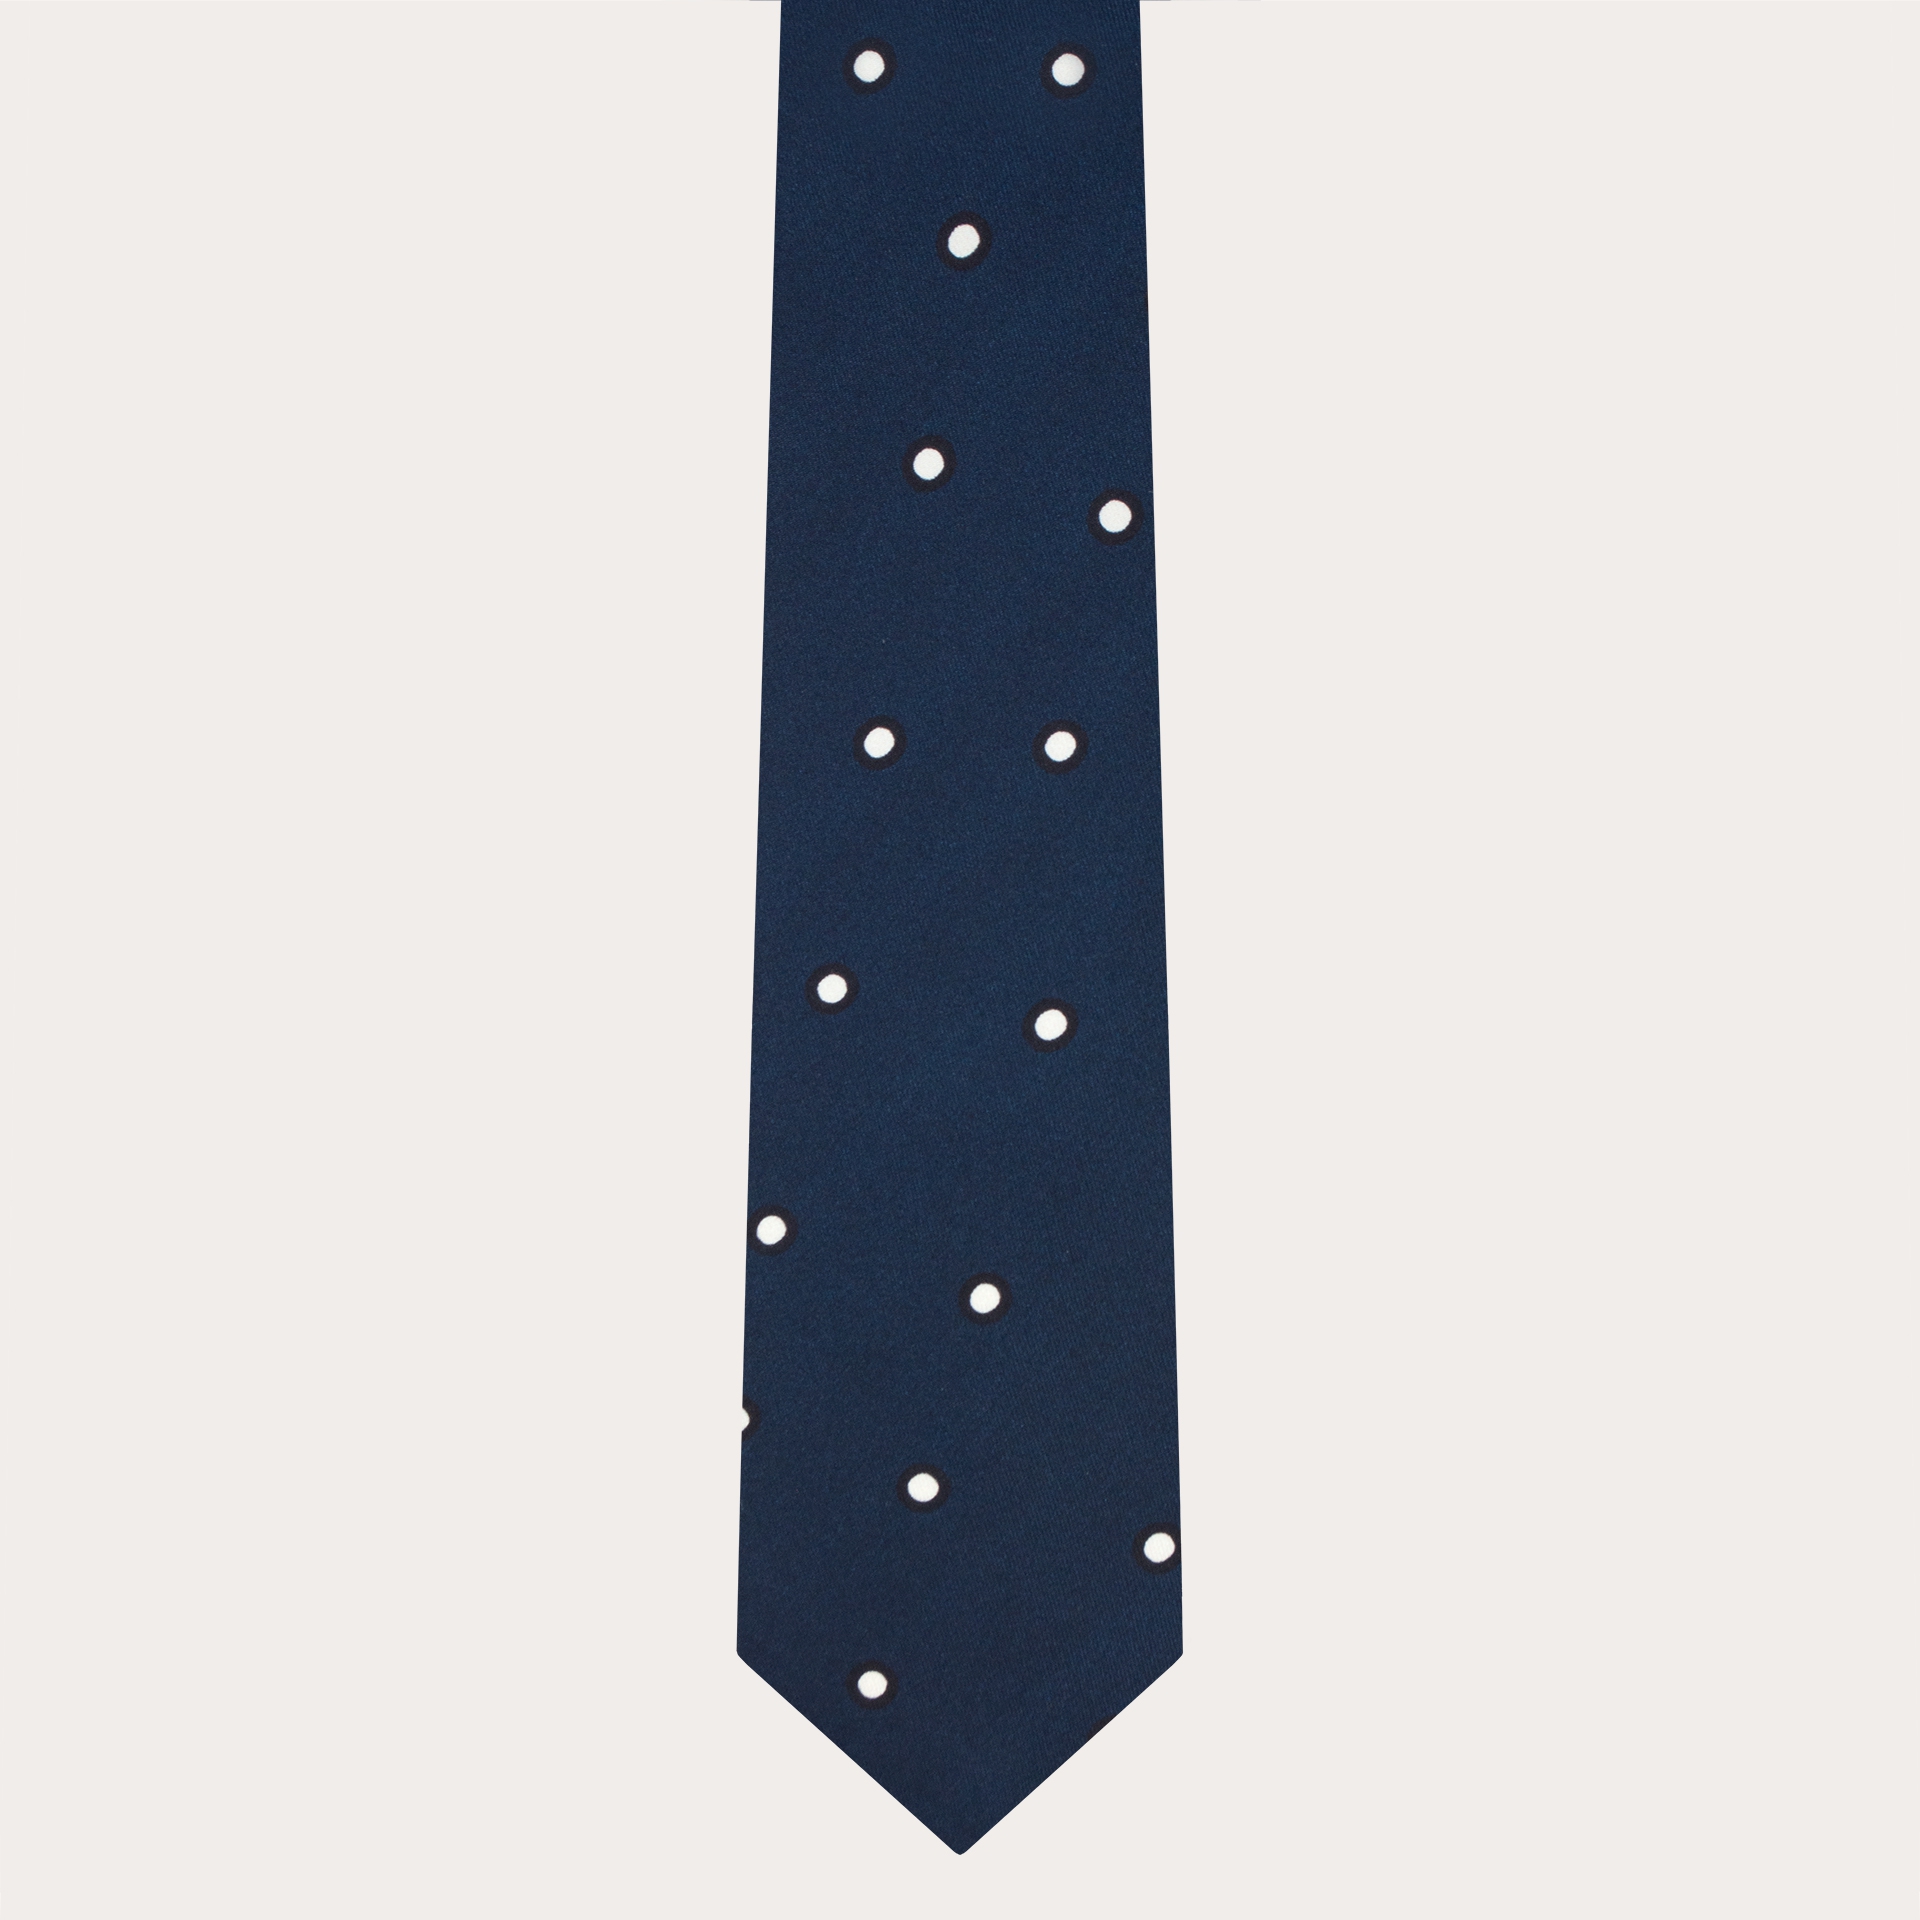 Corbata de seda para hombre azul con estampado de lunares blancos